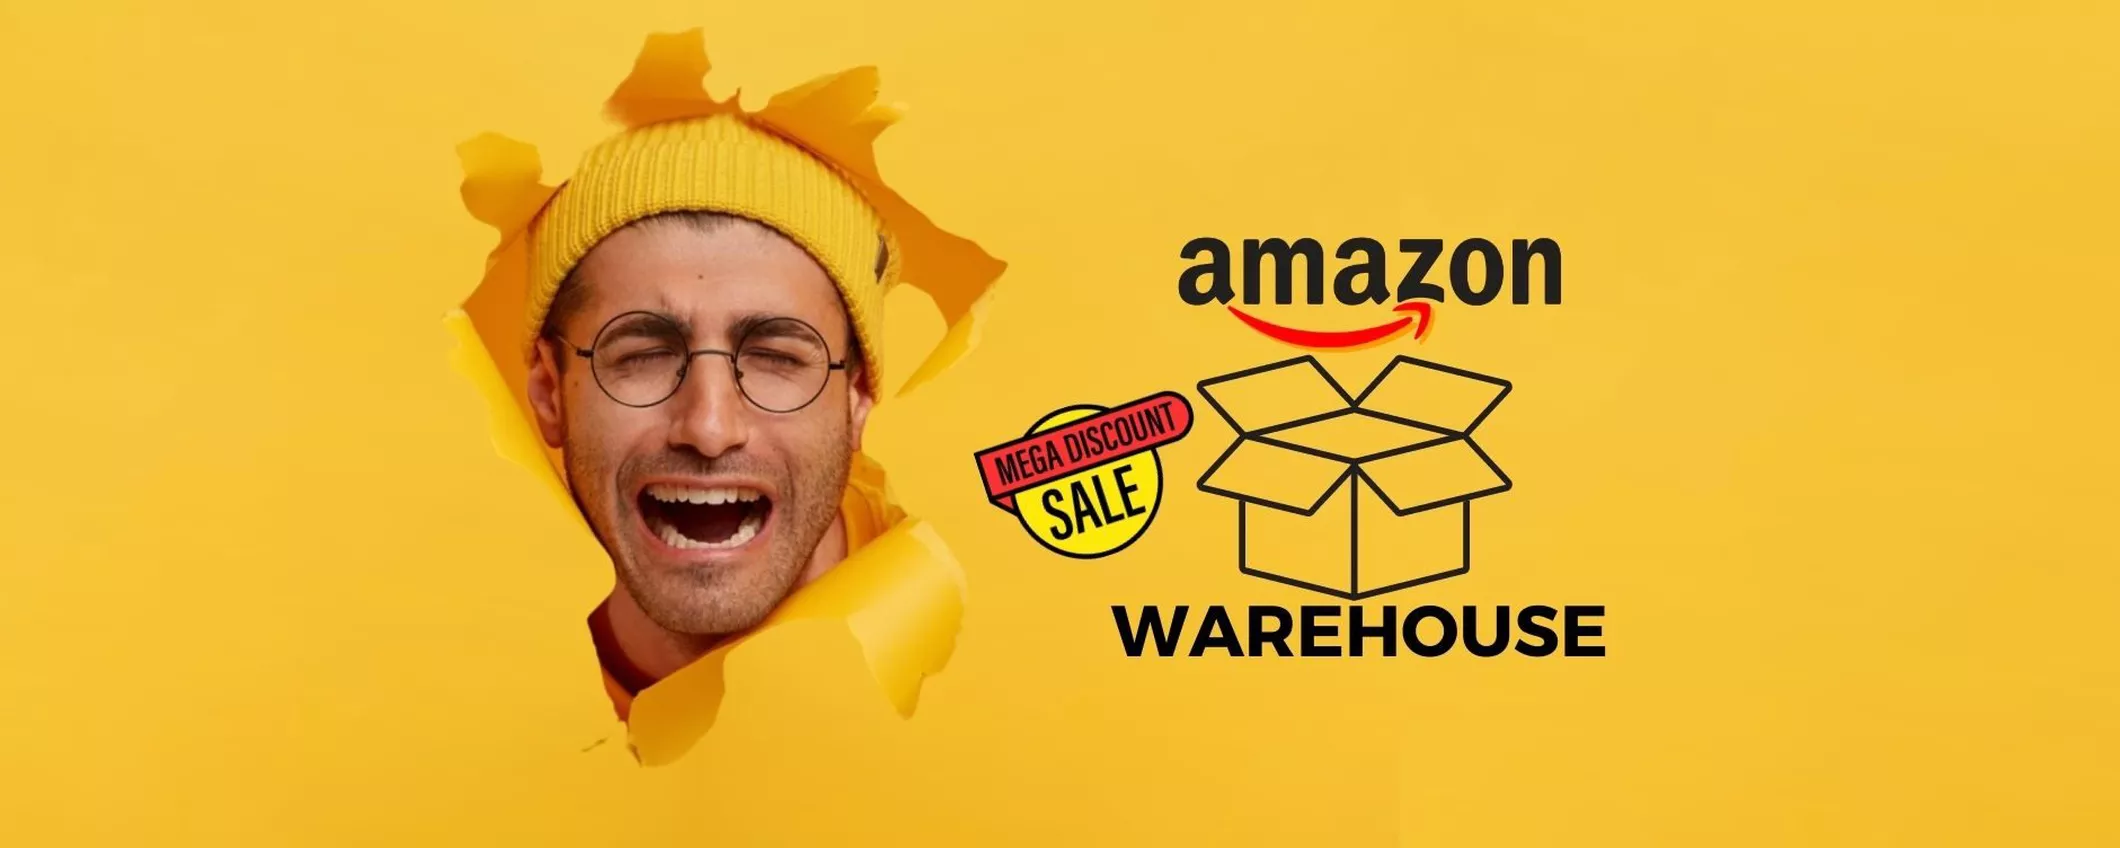 Mercatino dei FURBI: le migliori offerte su Amazon Warehouse (8 -14 Maggio)